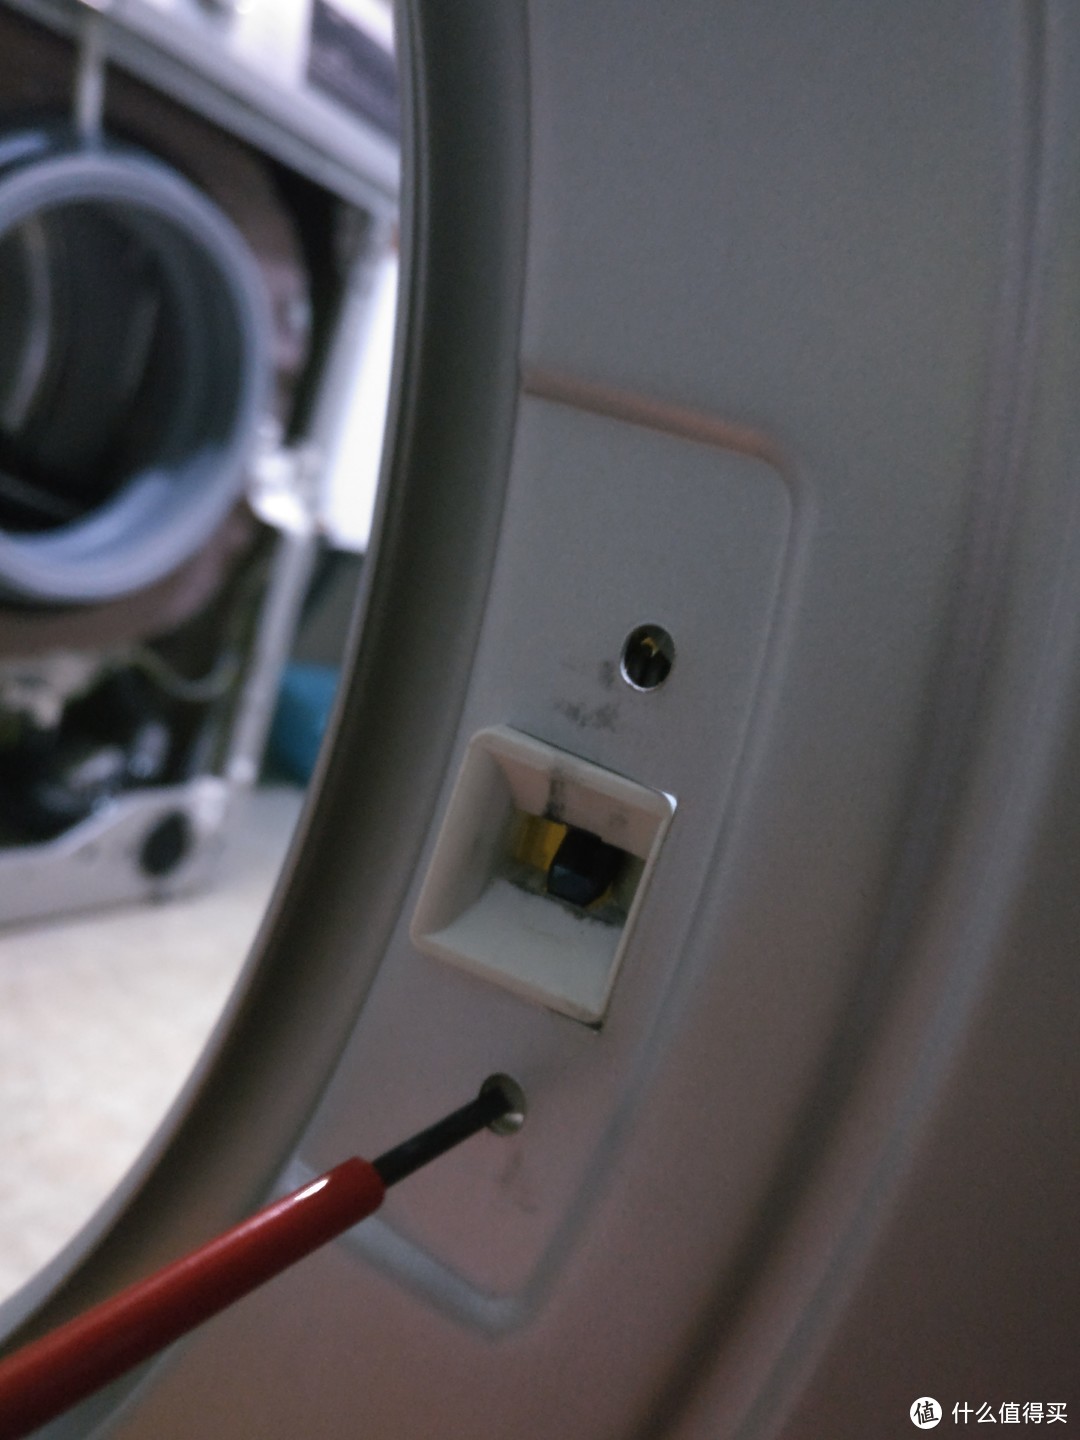 #原创新人#Siemens 西门子 滚筒洗衣机 门锁洗冤录—电磁锁问题解决过程